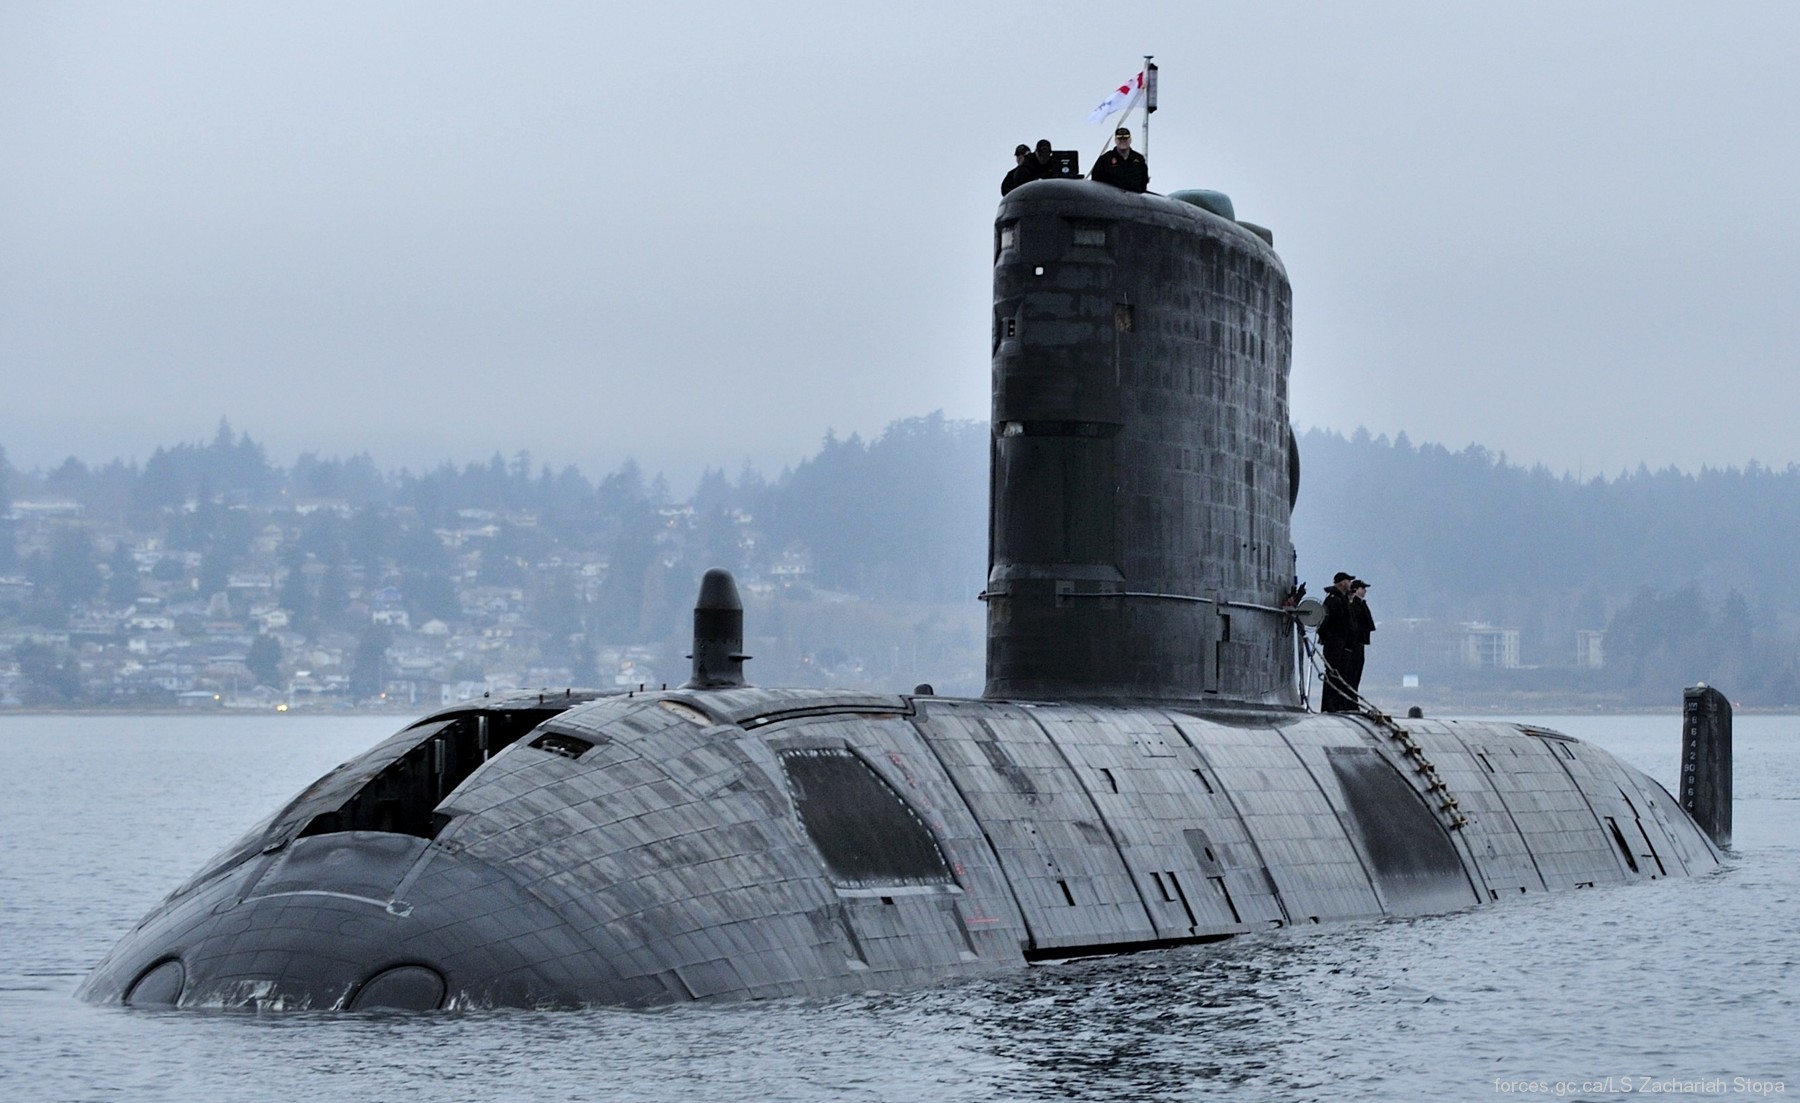 upholder class attack submarine ssk hunter killer royal navy 06